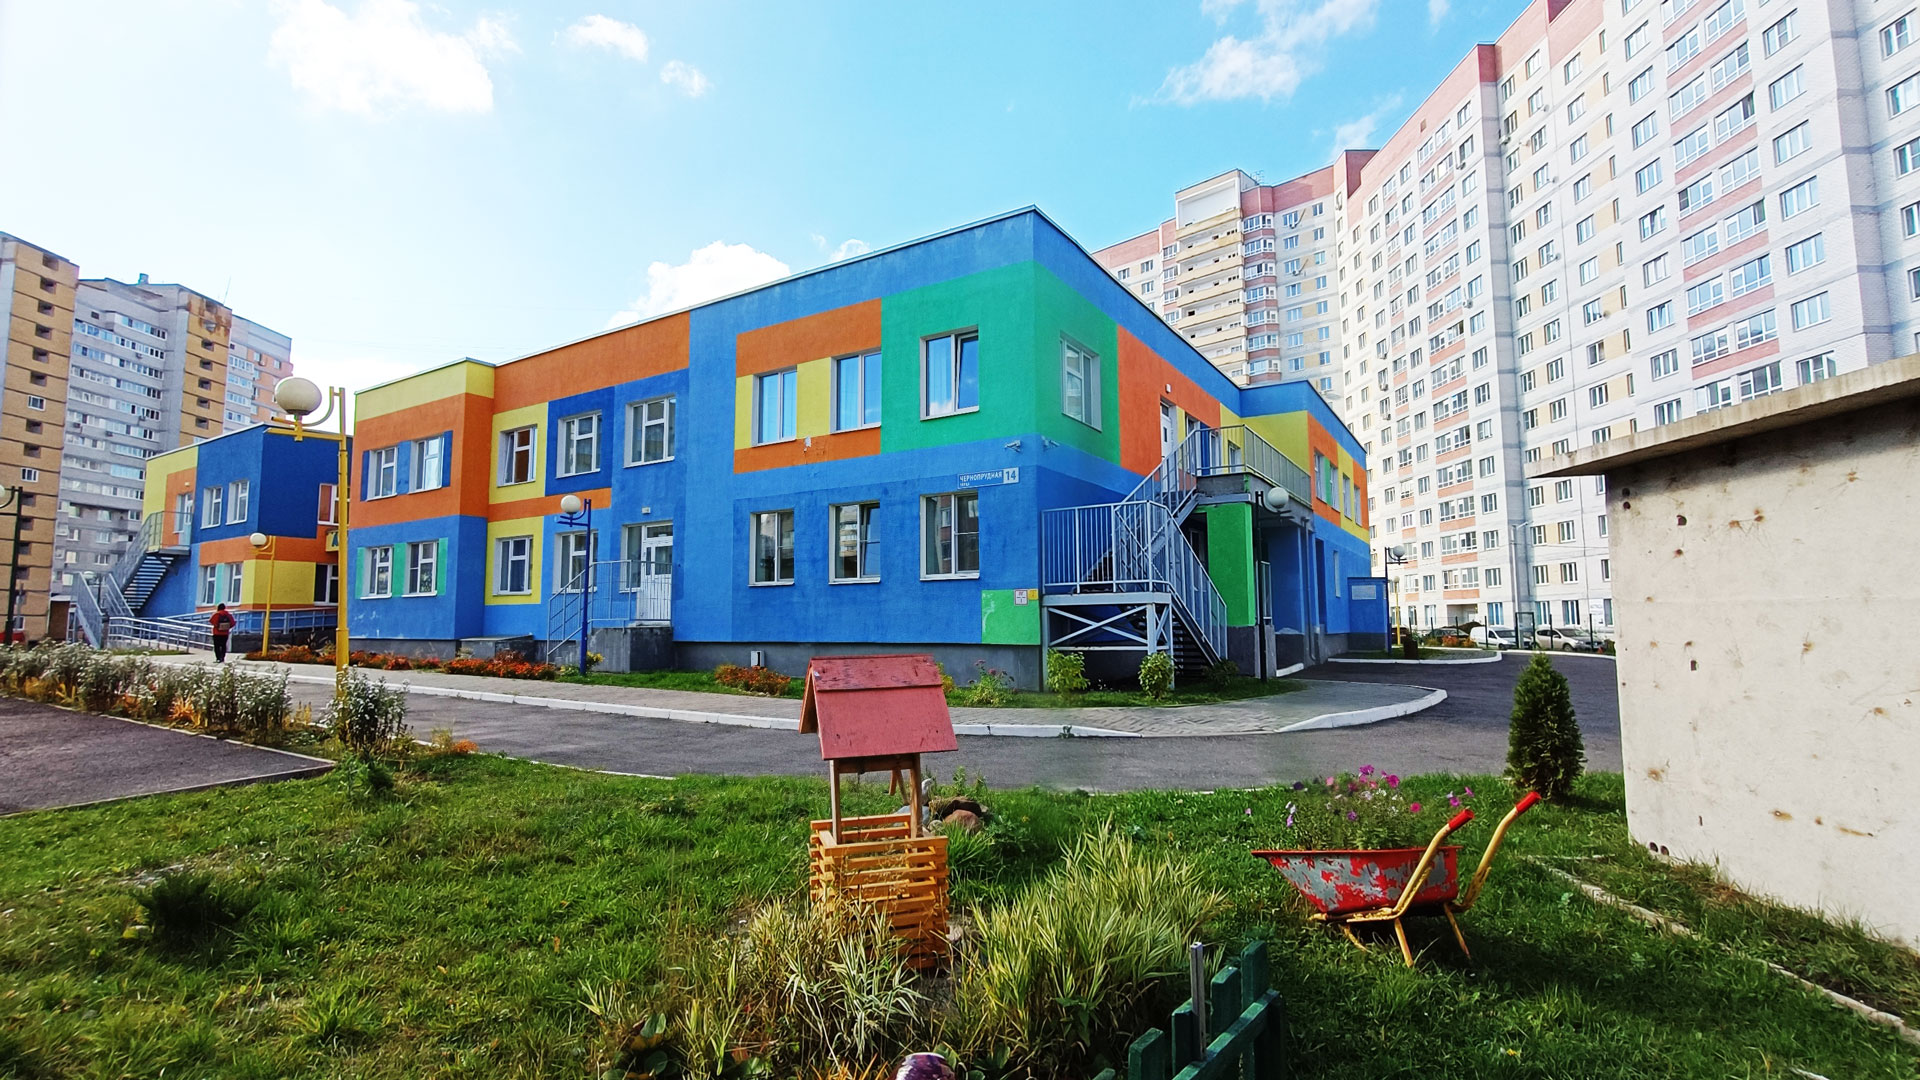 Детский сад 96 Ярославль: панорамный вид здания.